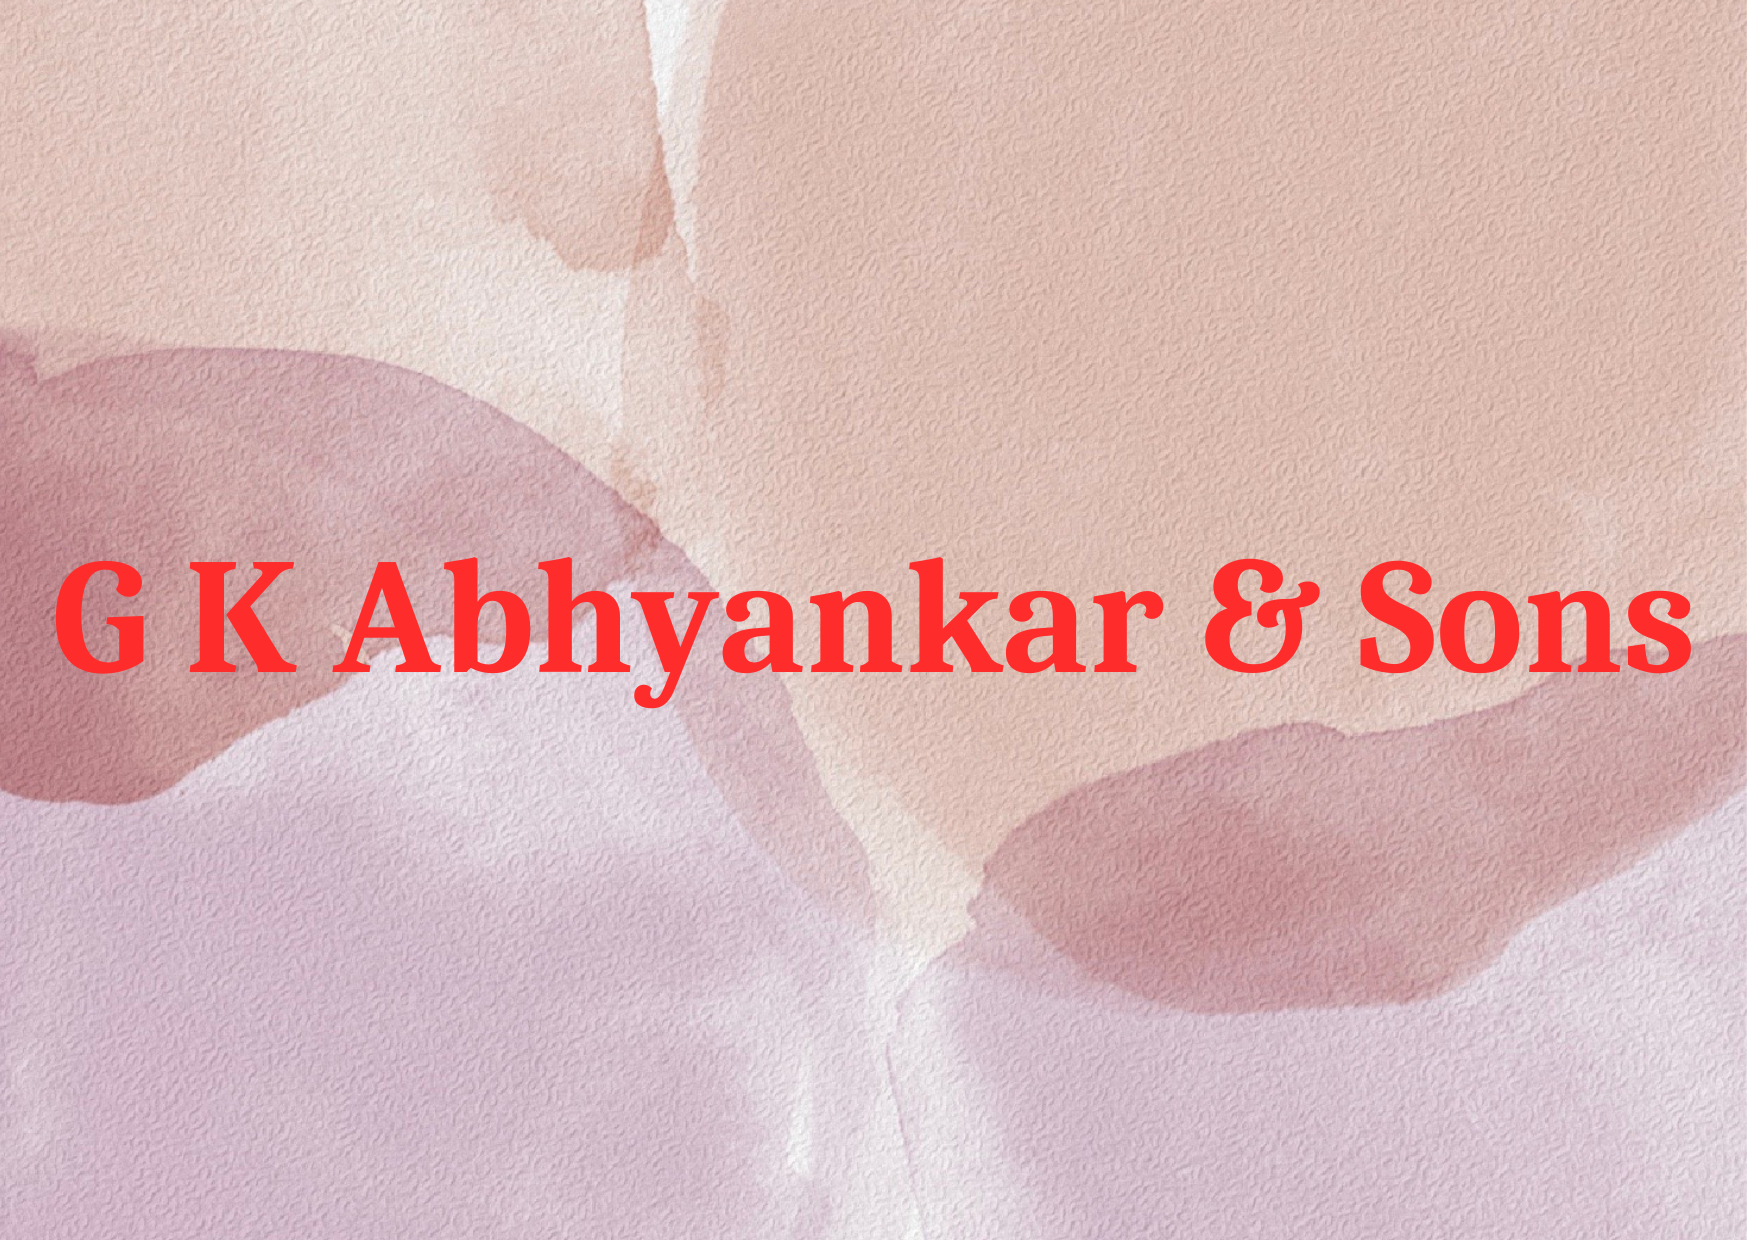 G K Abhyankar & Sons 